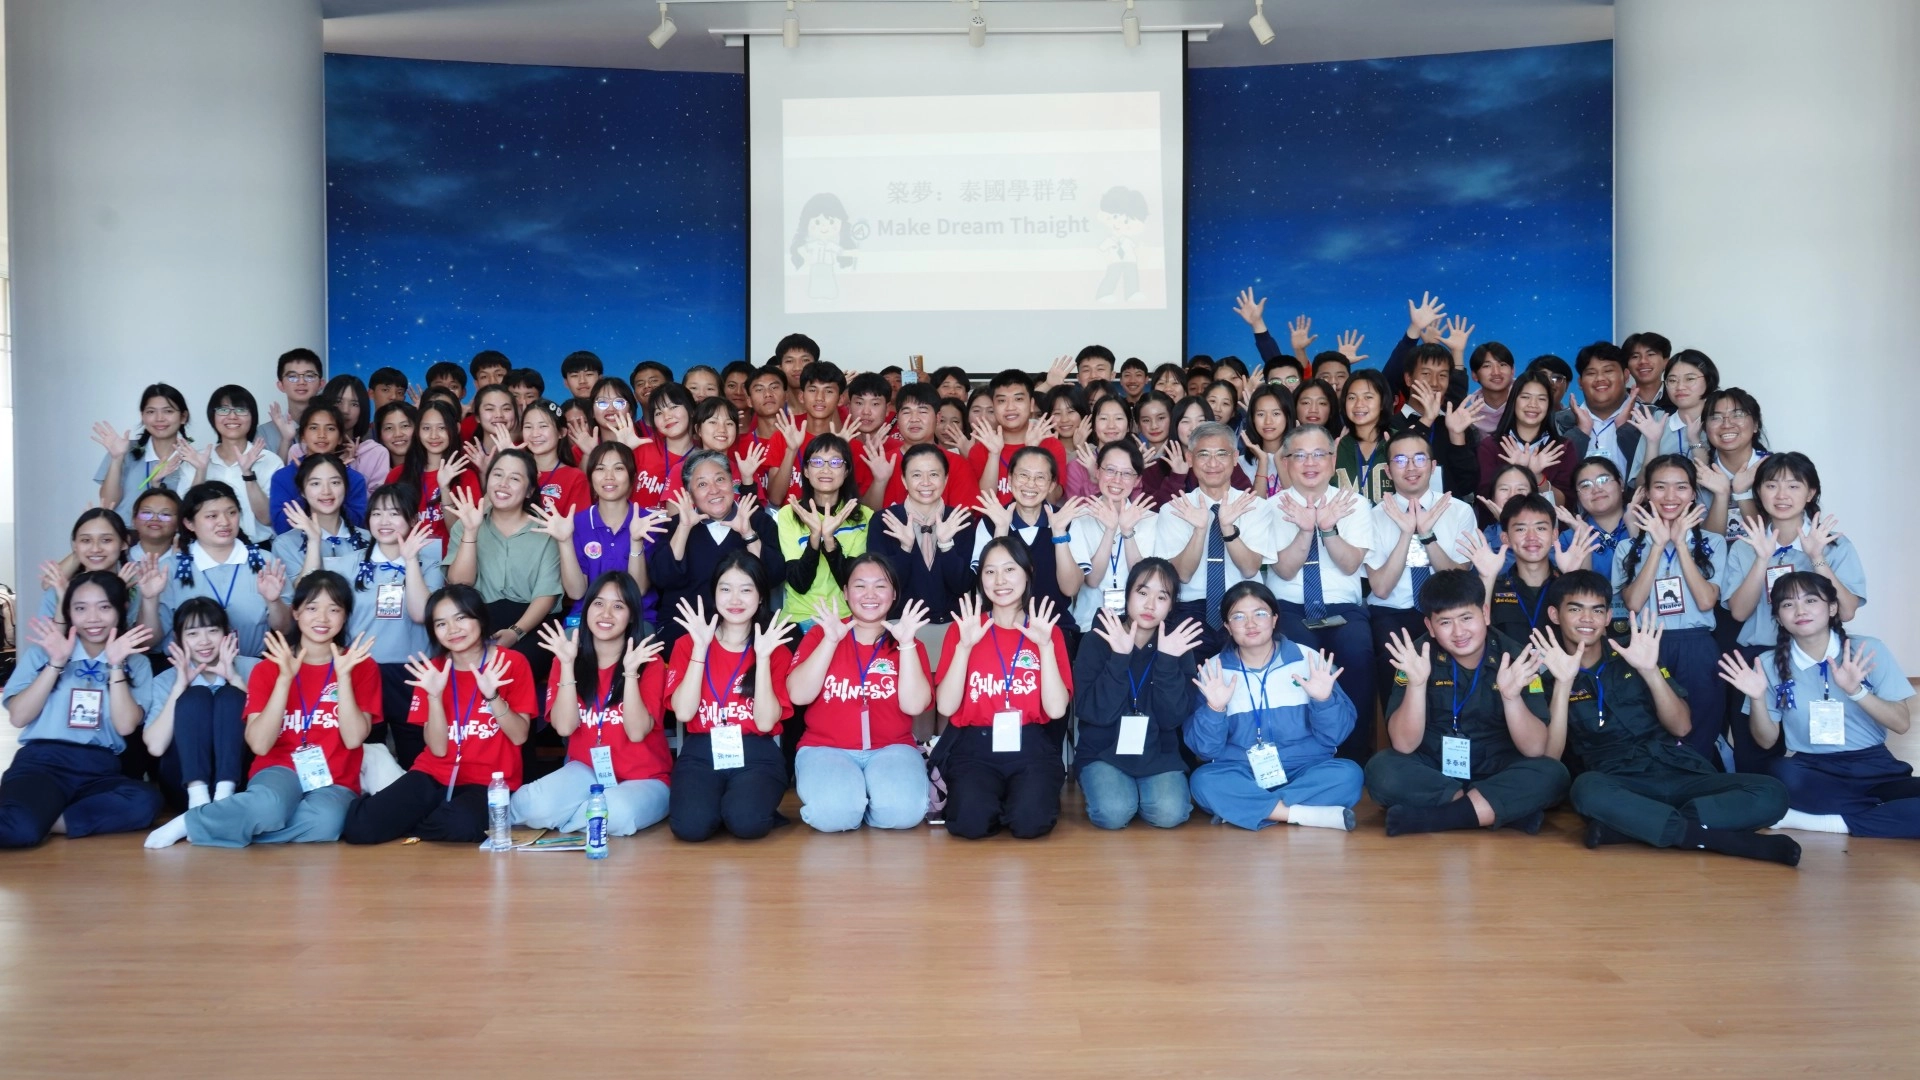 舉辦大學科系學群營介紹，泰國當地七所華校共包括包括:清邁慈濟學校、一新中學、光復中學、大同中學以及三所泰國主流學校的師生參加。